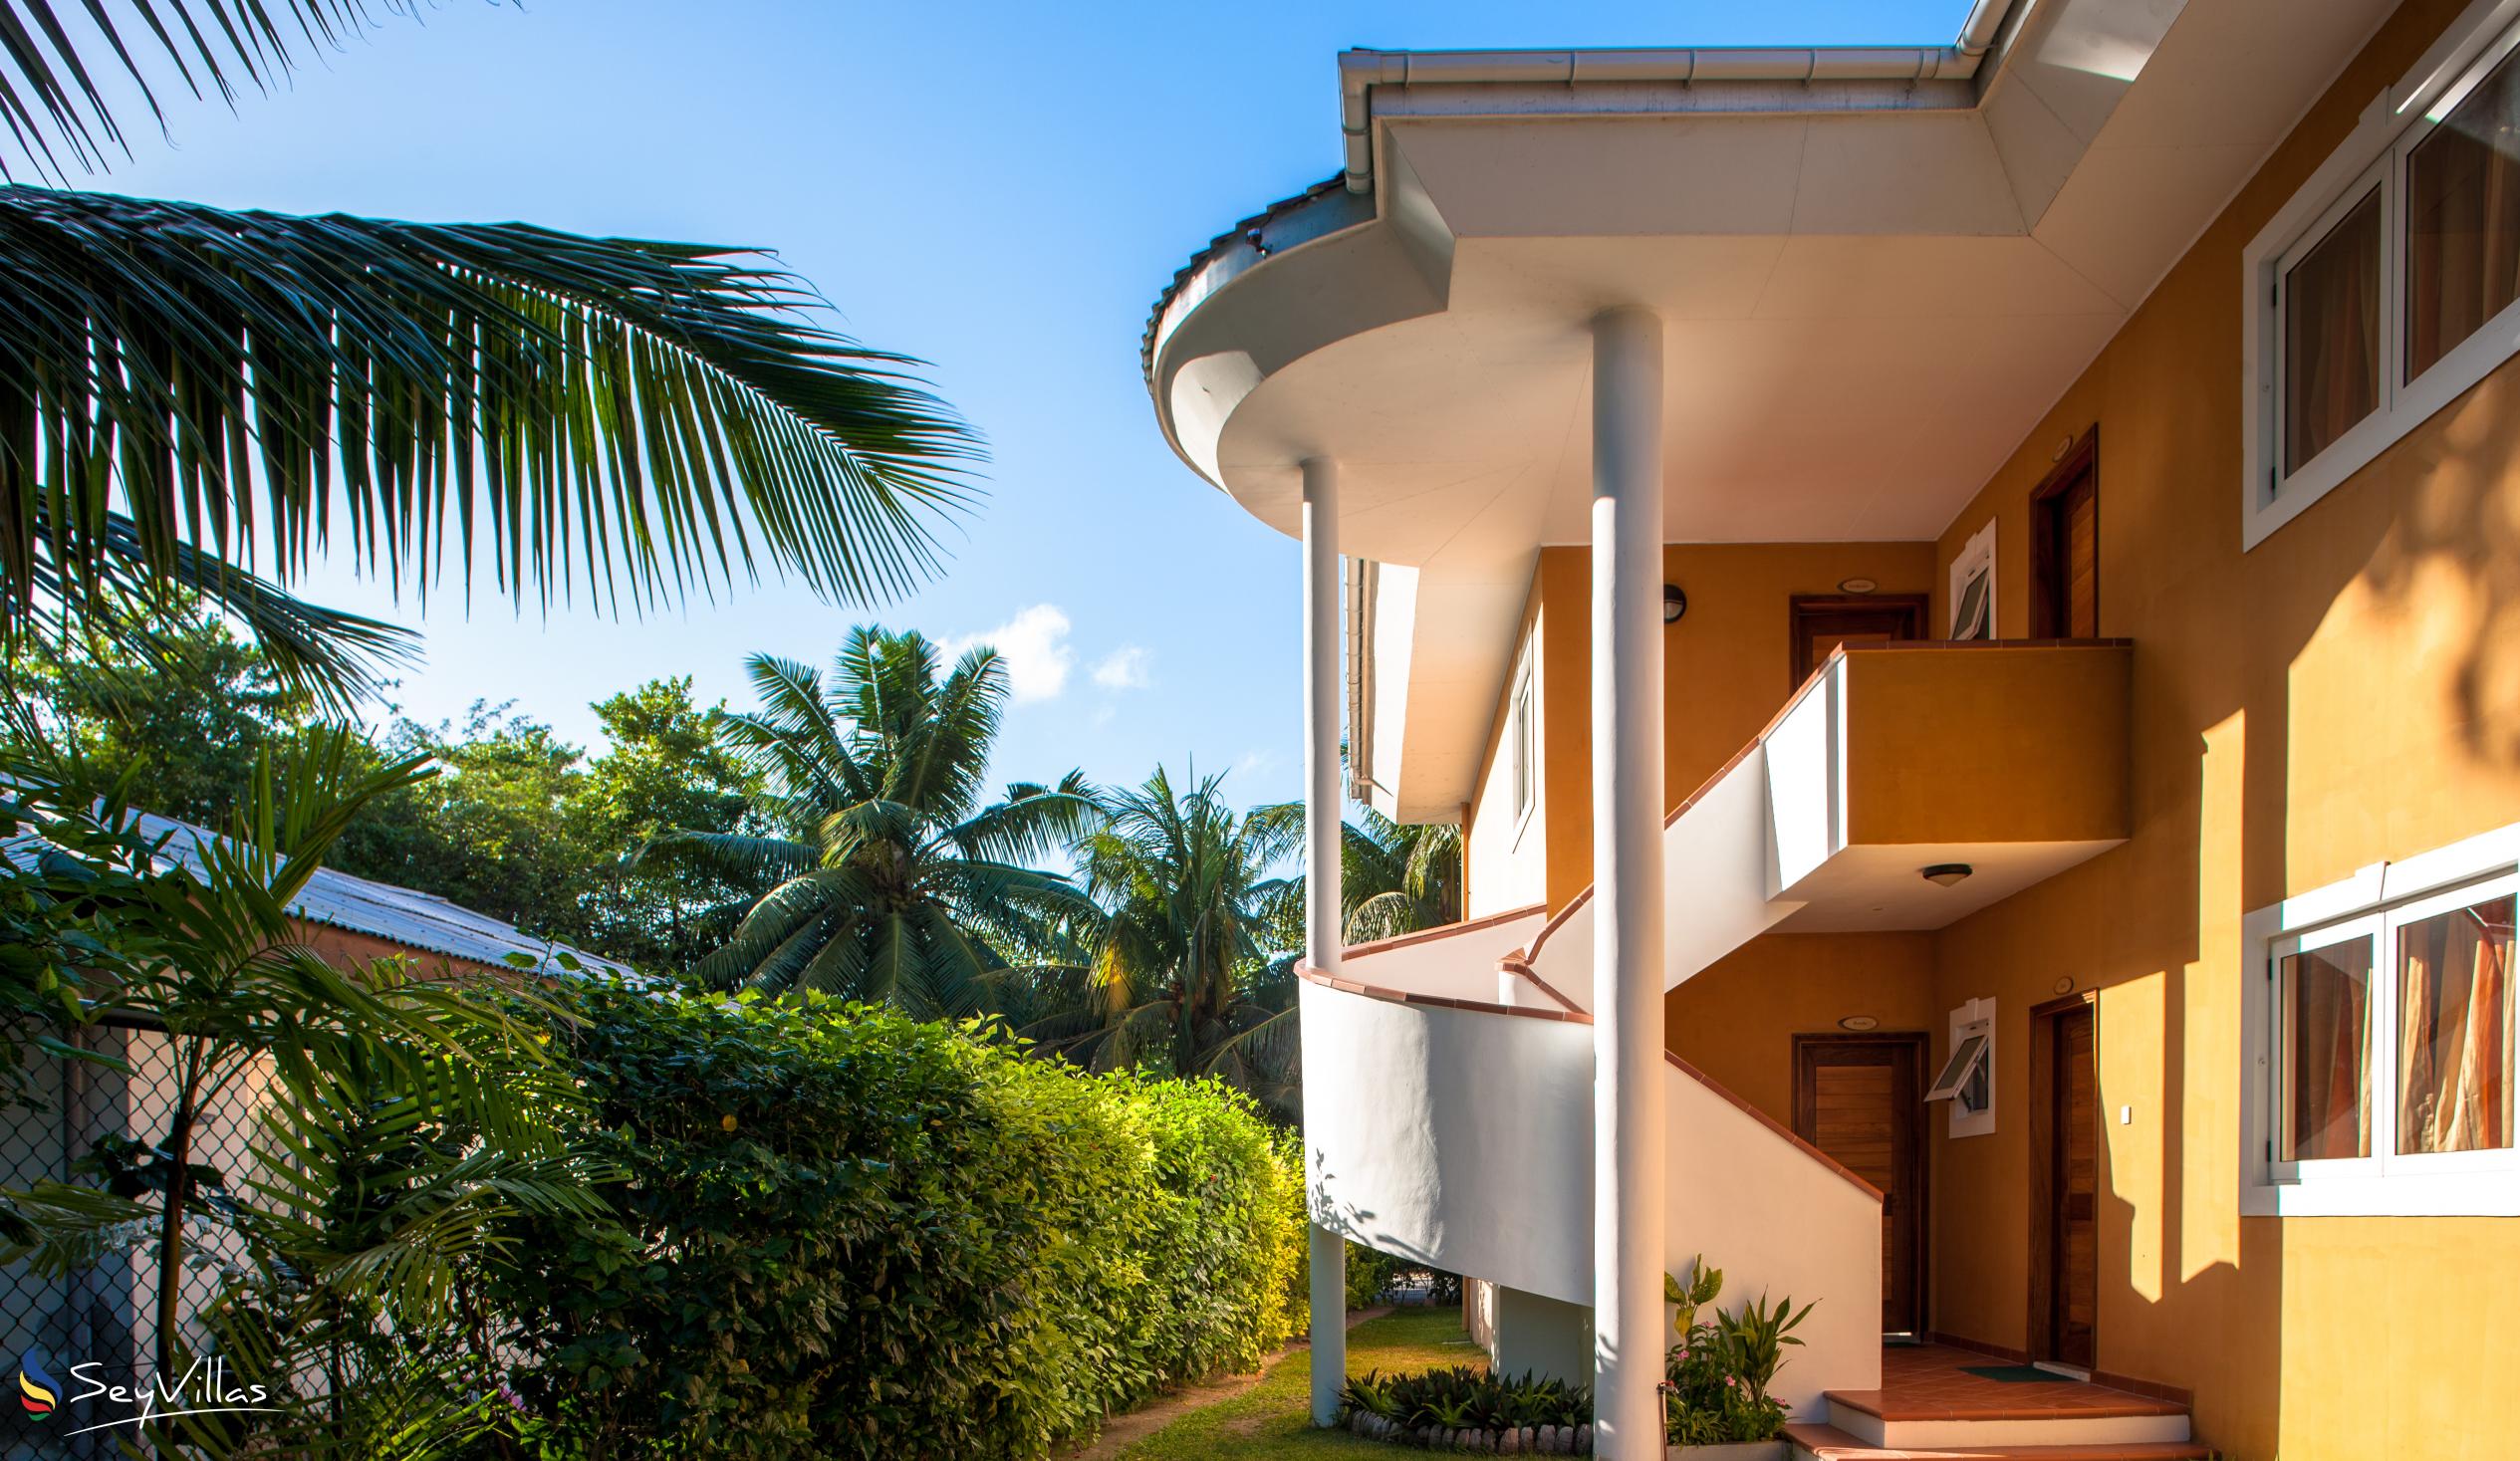 Foto 4: Cote d'Or Apartments - Aussenbereich - Praslin (Seychellen)